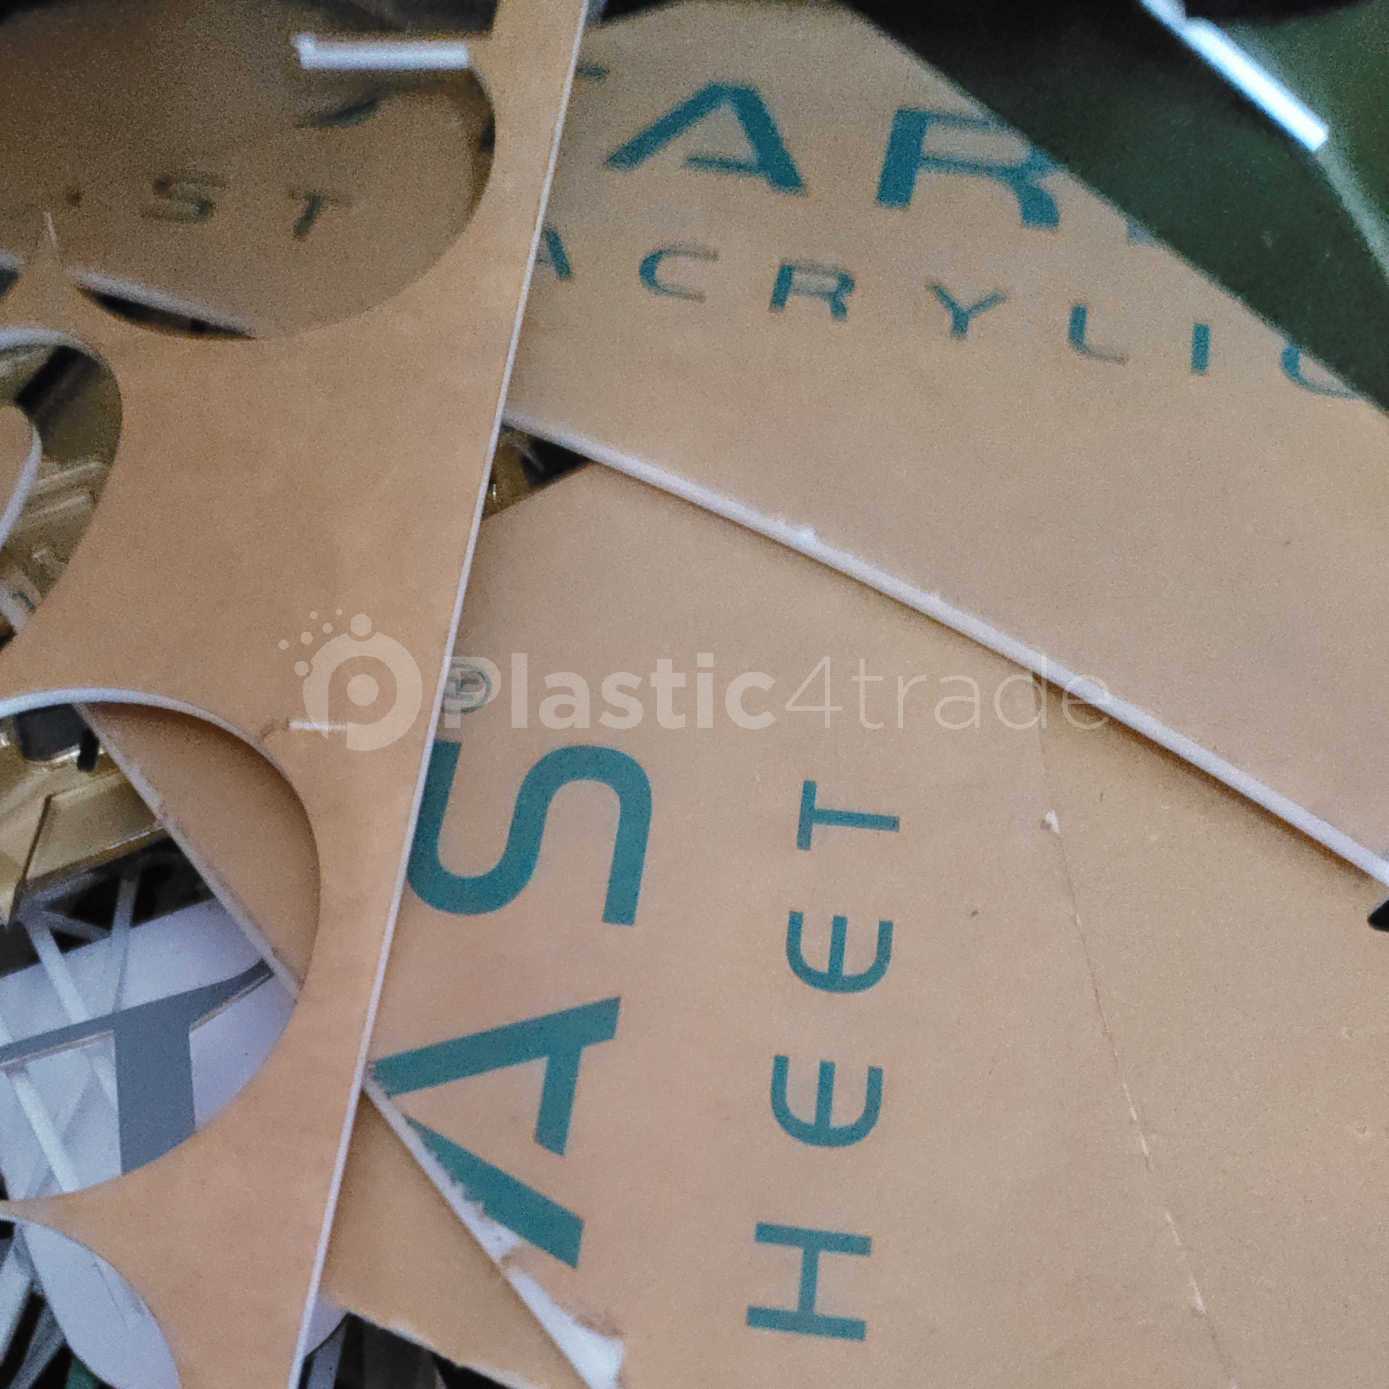 ACRYLIC SCRAP ACRYLIC Scrap Mix Scrap gujarat india Plastic4trade